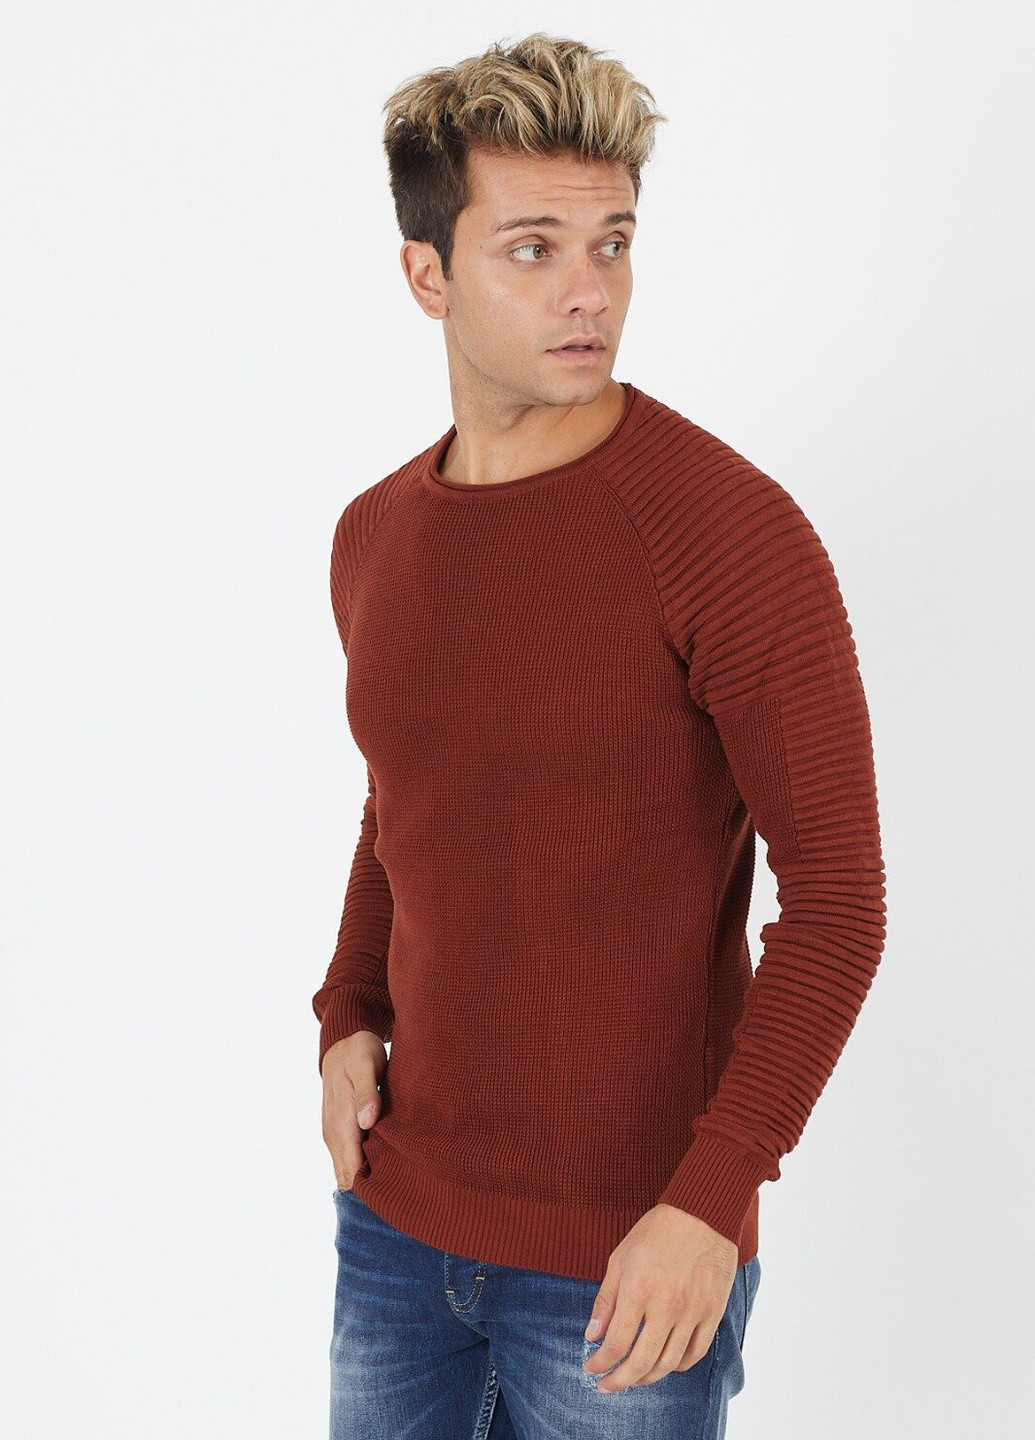 Терракотовый демисезонный свитер 6397 xl (52) терракотовый (2000903549376) Figo